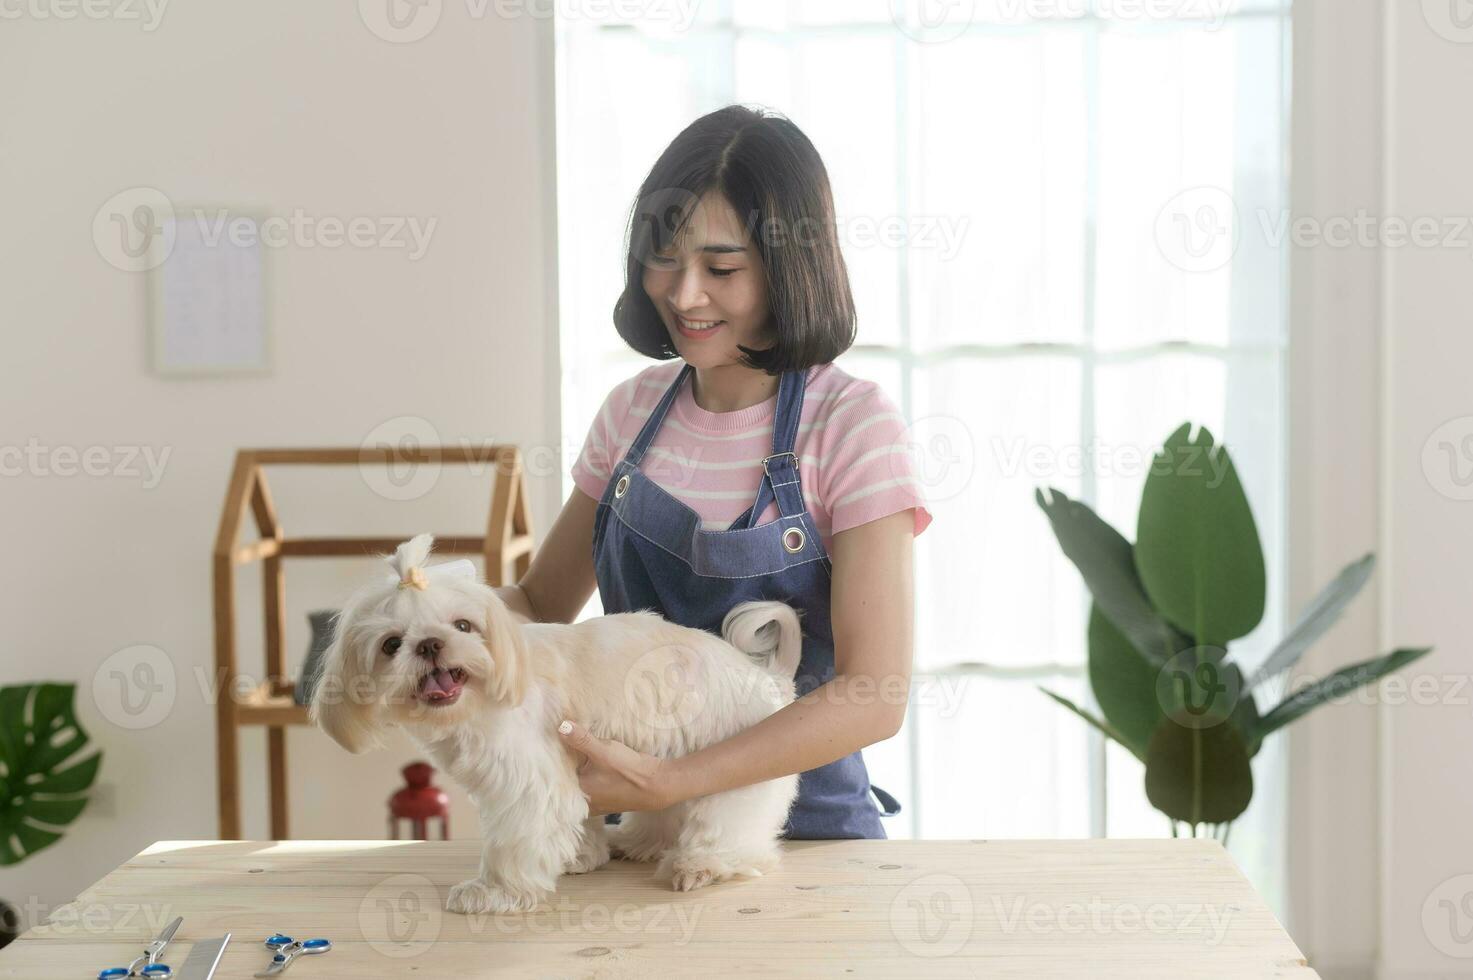 femelle professionnel toiletteur garniture la Coupe de cheveux et ratissage chien fourrure à animal de compagnie spa toilettage salon photo